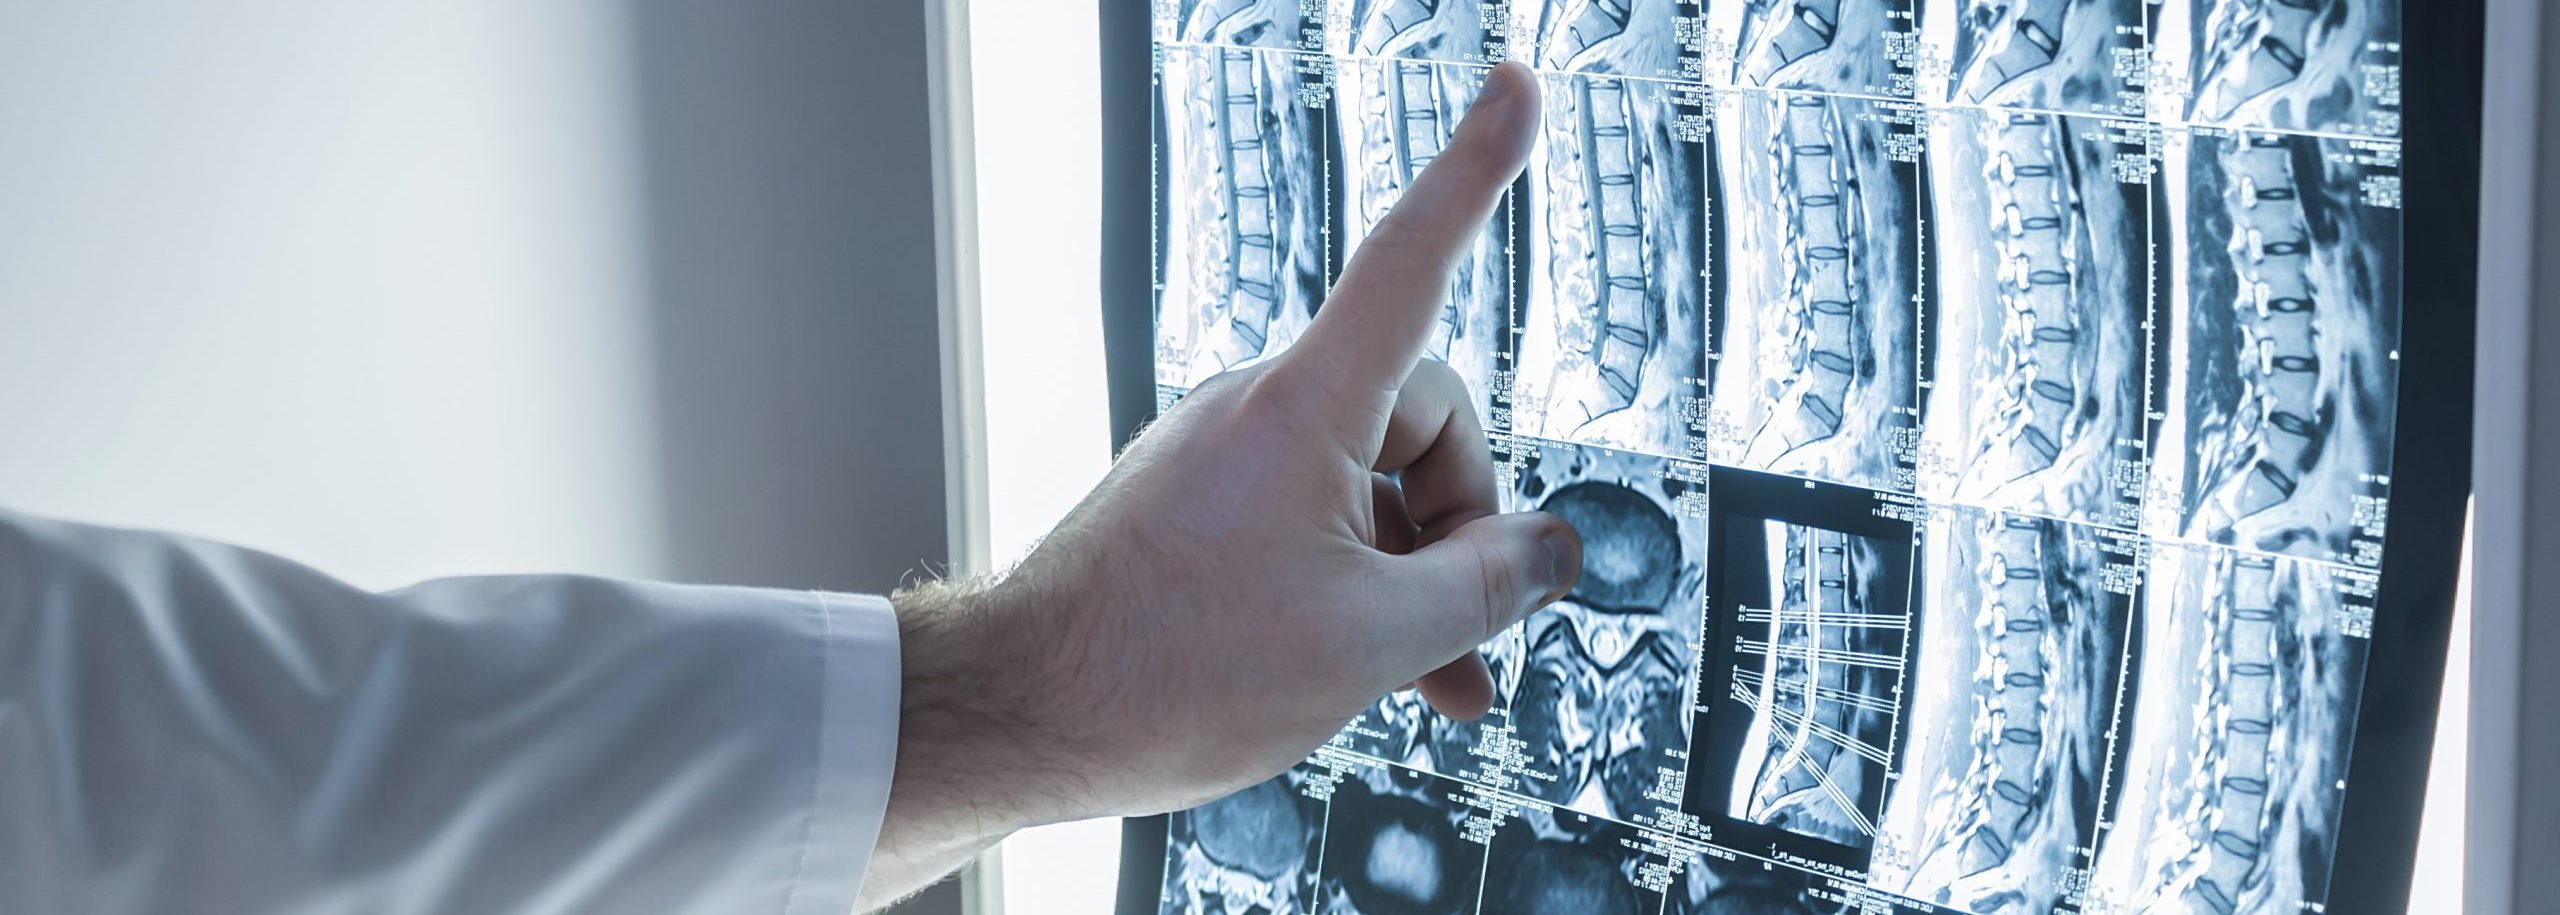 Operateur zeigt auf Röntgenbild der Lendenwirbelsäule